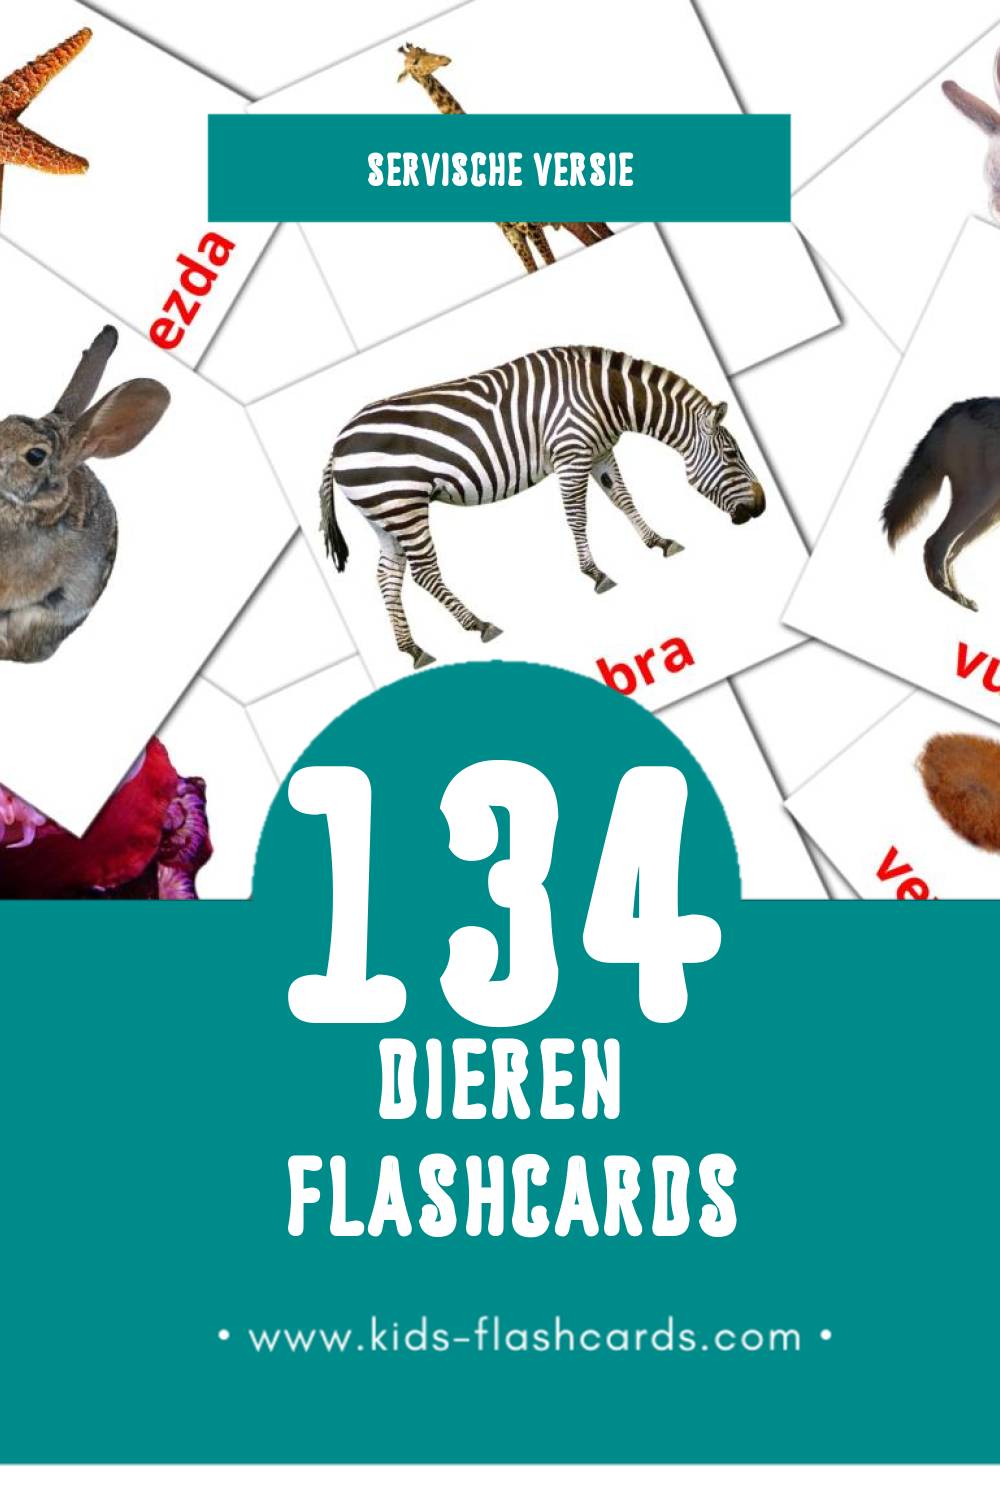 Visuele Životinje Flashcards voor Kleuters (134 kaarten in het Servisch)